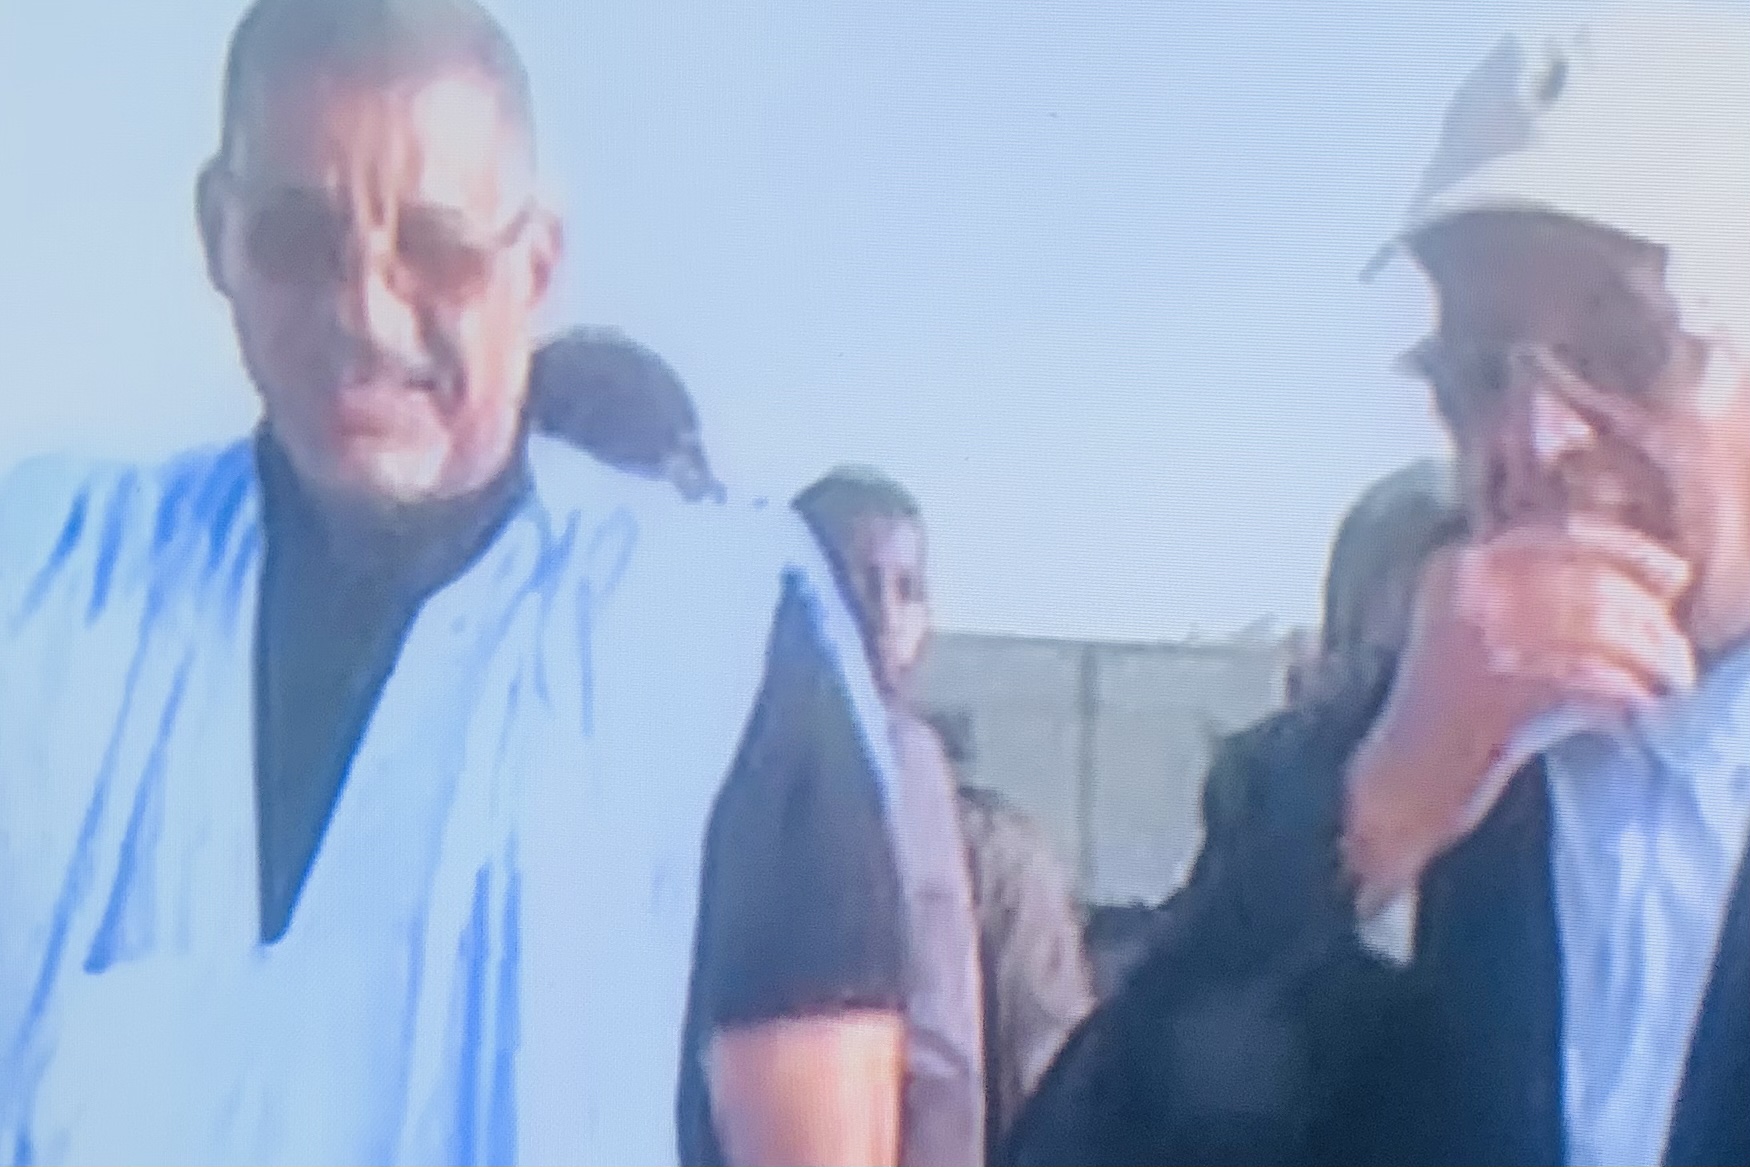 وزير المياه رفقة رجل الأعمال عبدو الله ولد الشوايل المدير العام لشركة “سايمكس “